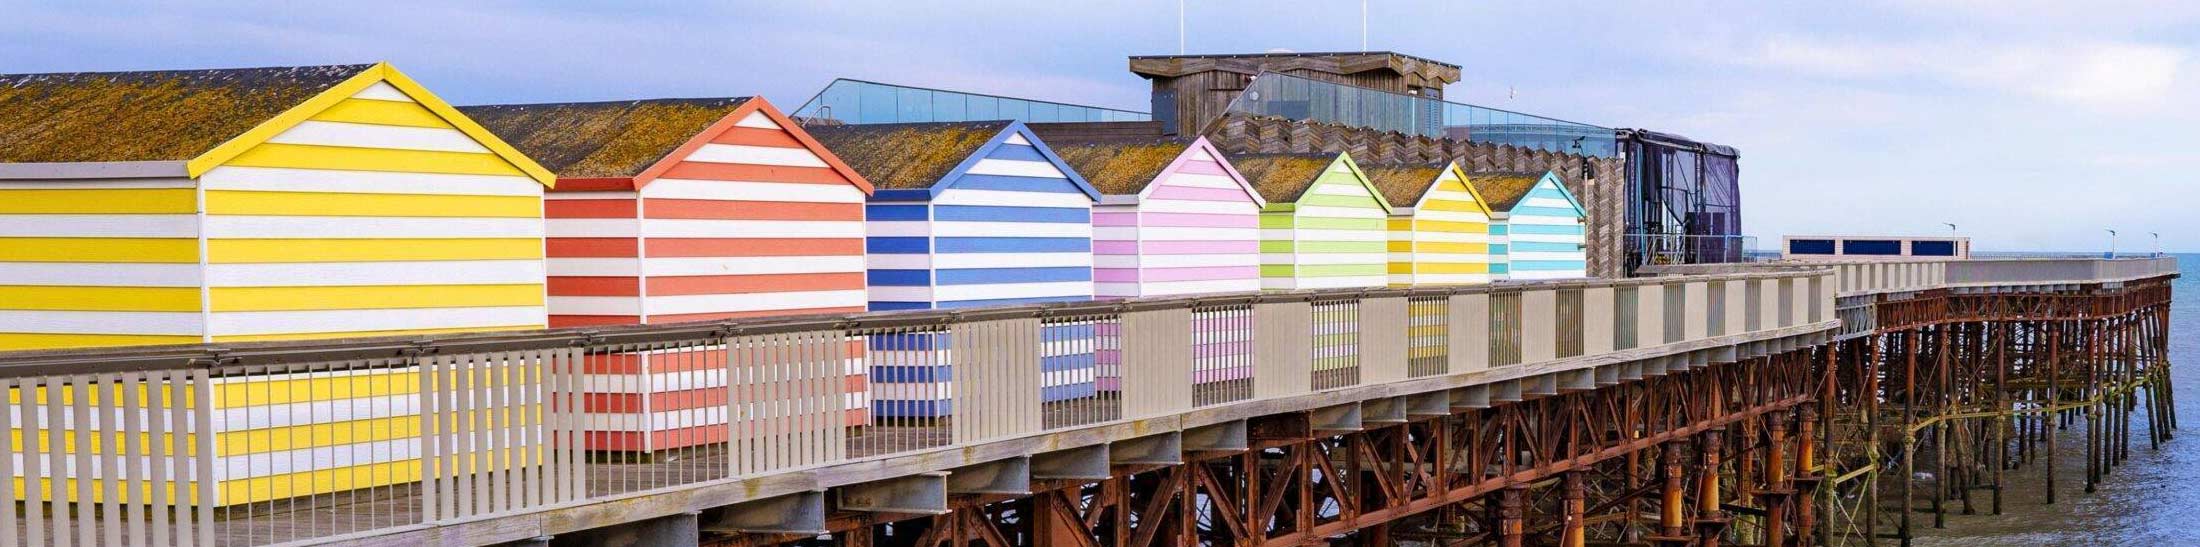 bright coloured beach huts on pier